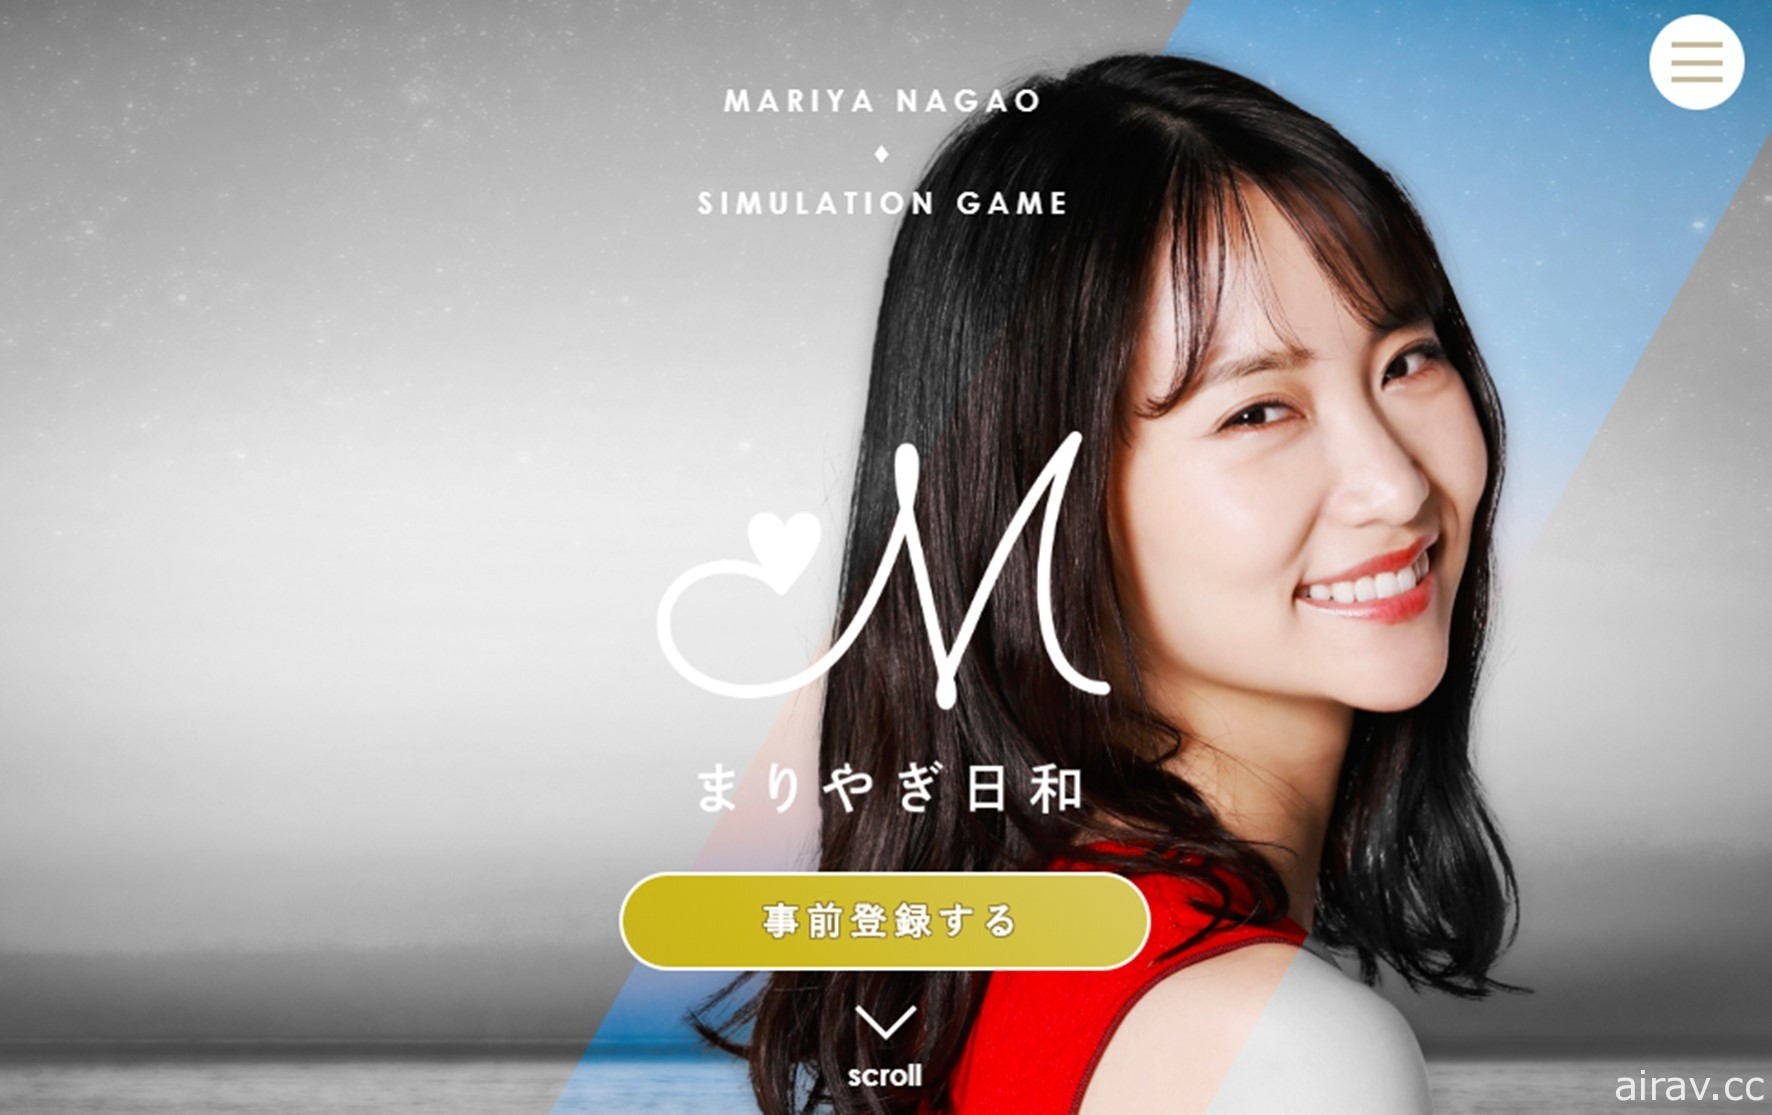 前 AKB48 成員永尾瑪利亞寫實版模擬遊戲《瑪利羊日和》正式展開事前登錄